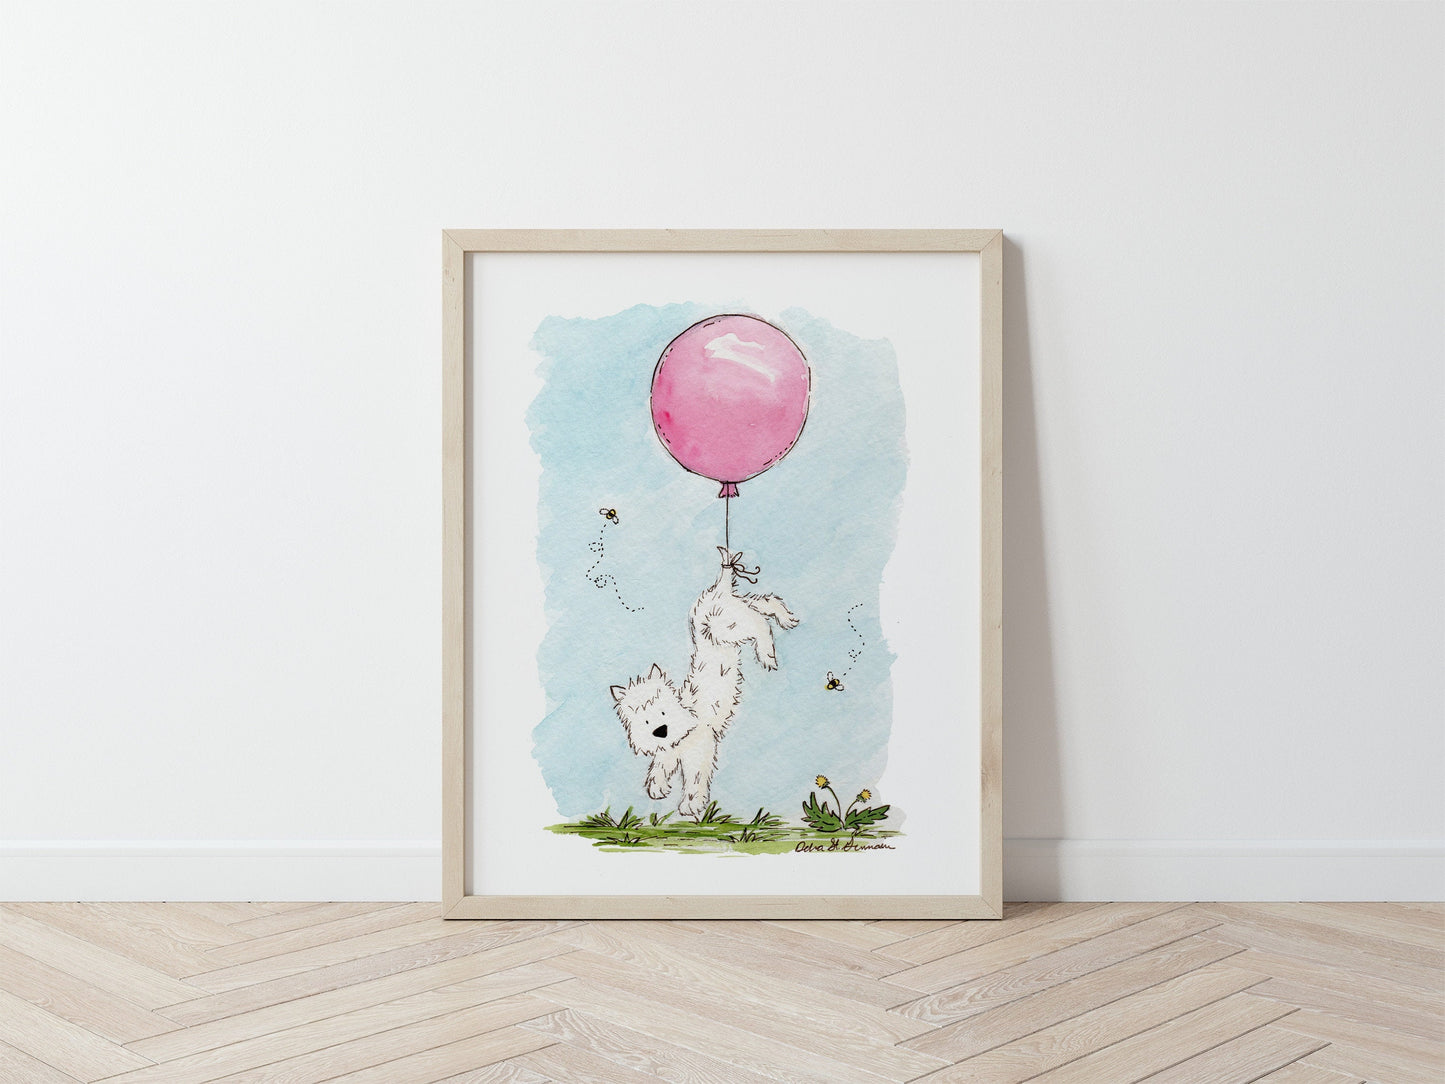 Westie Art, Children's Wall Art, West Highland White Terrier with Pink Balloon